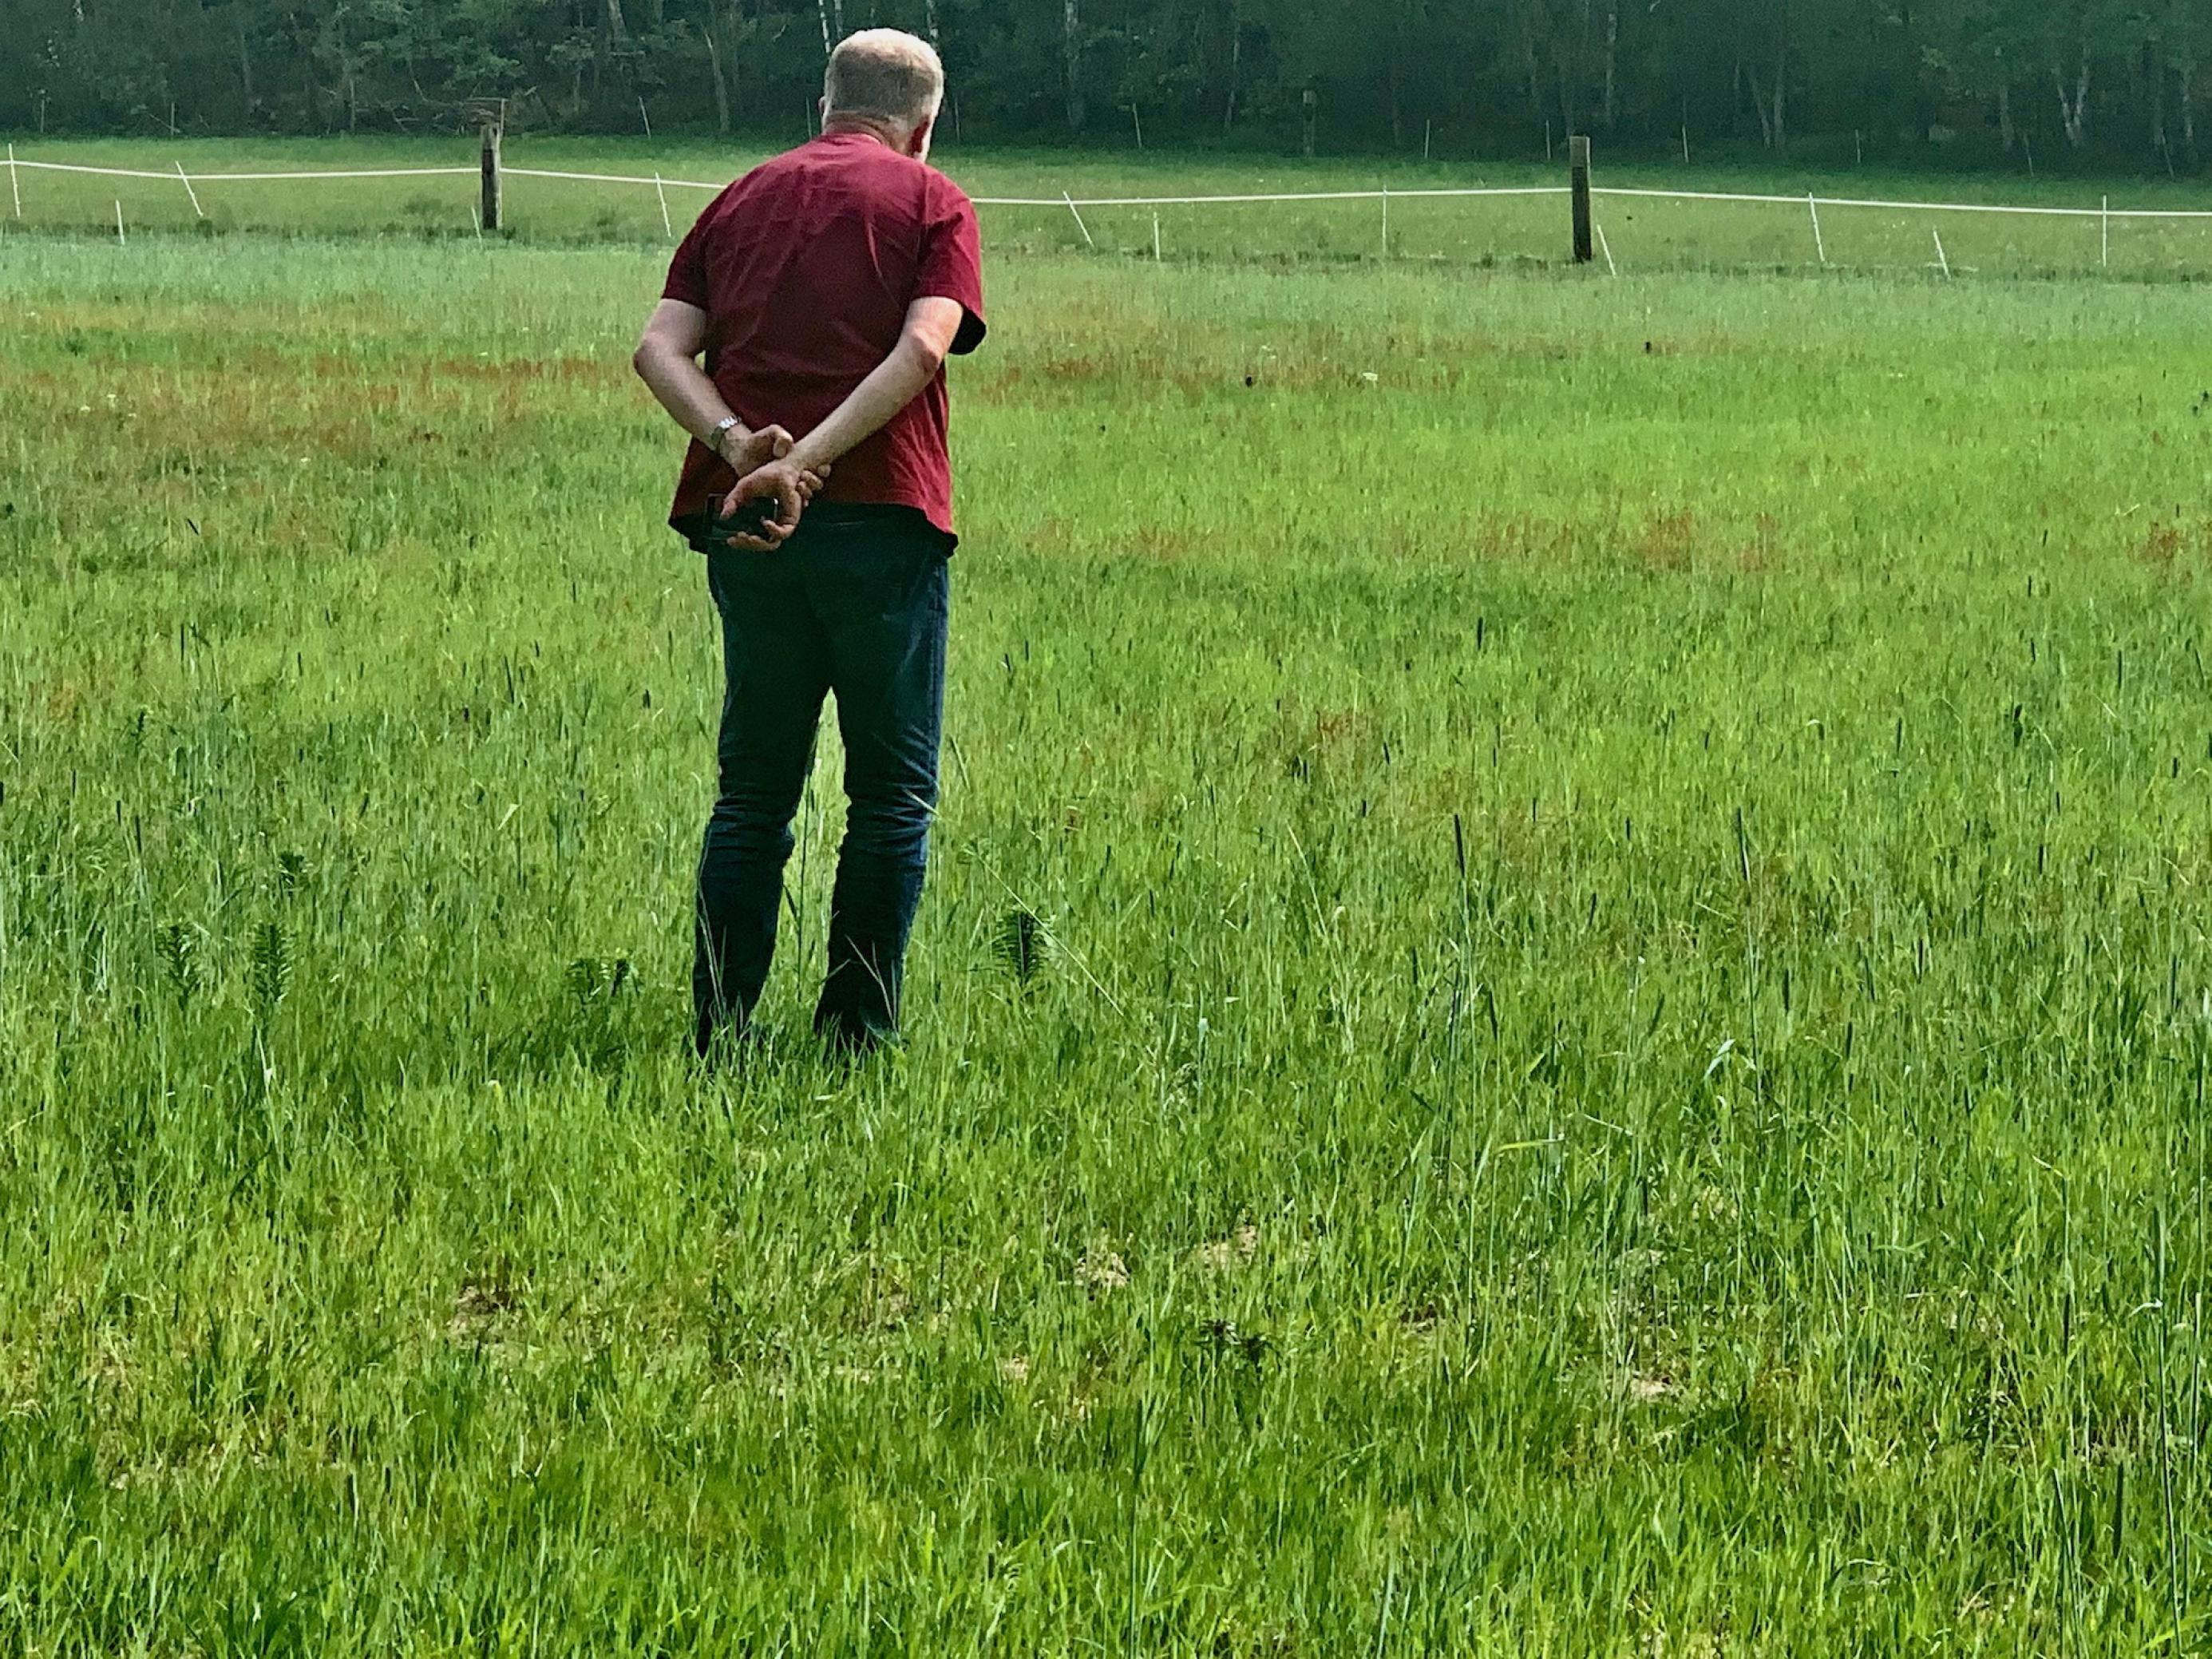 Mann im roten T-Shirt, von hinten gesehen, auf einer mit knöchelhohem, noch grünen Getreide bewachsenen Feld